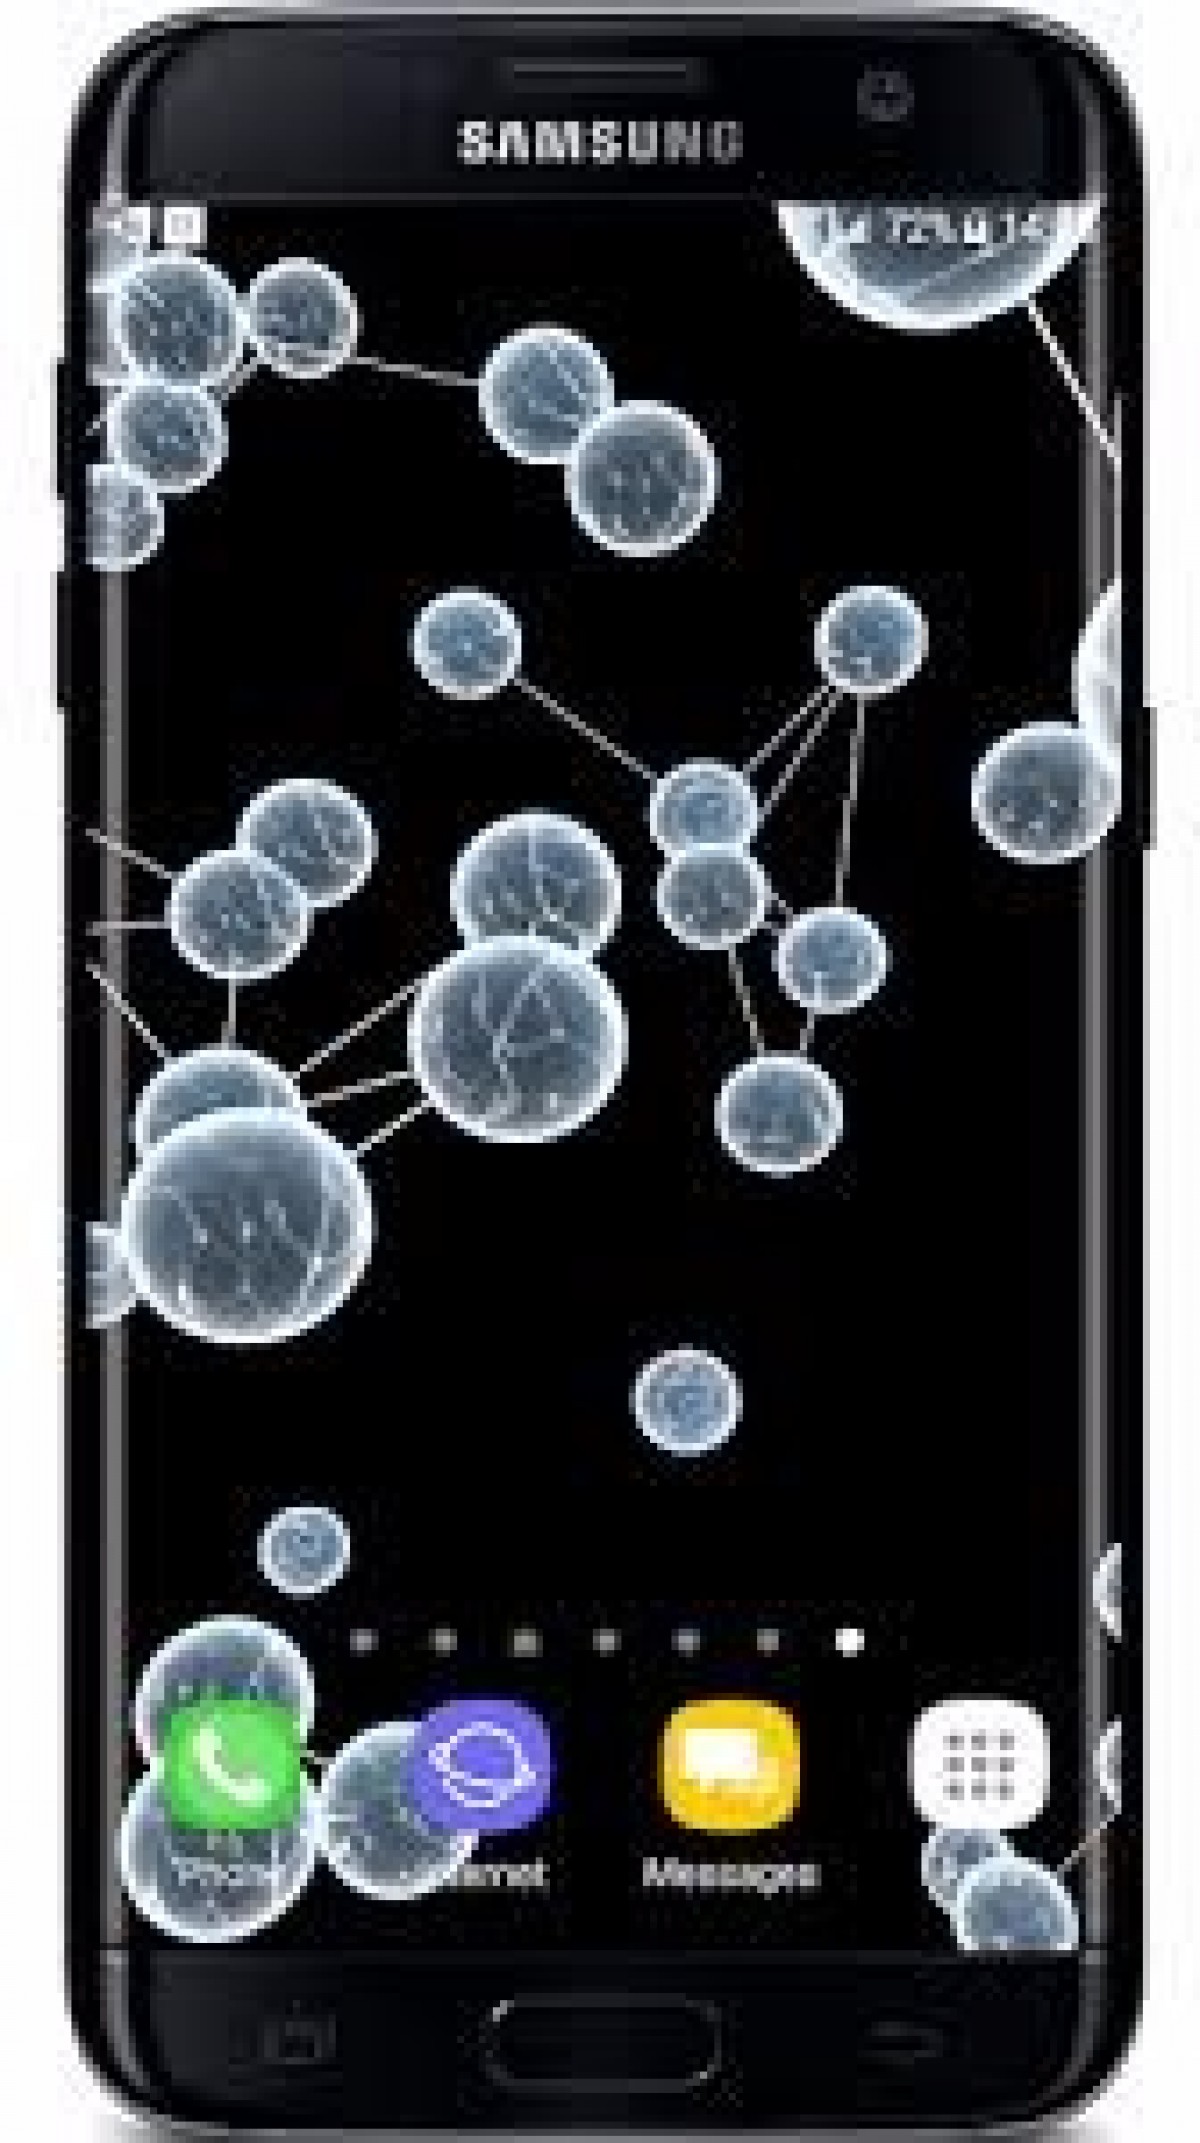 Crystal Particle Plexus 3d Live Wallpaper V1 - Smartphone - HD Wallpaper 